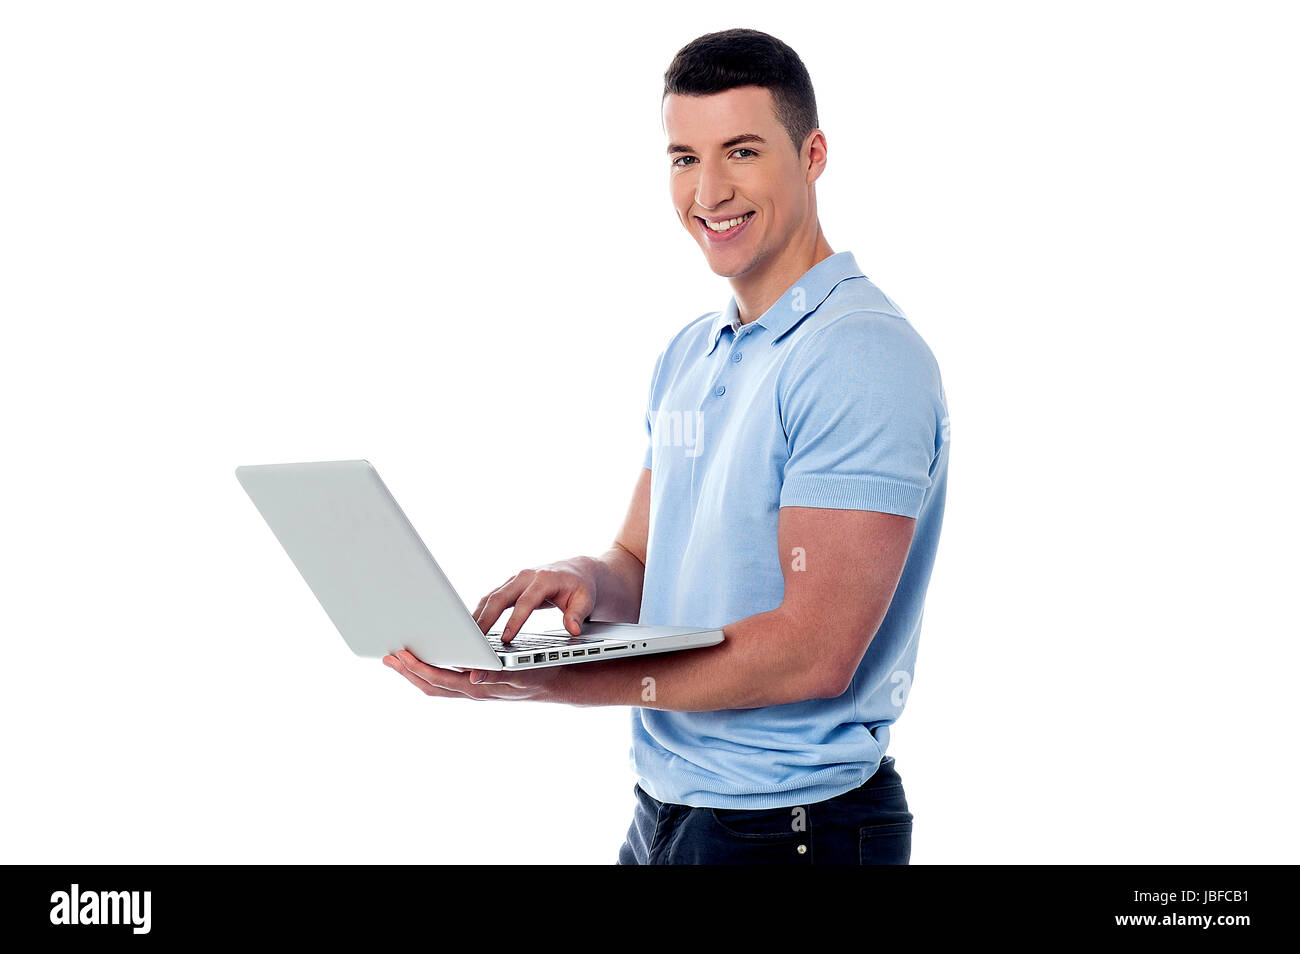 Smiling guy naviguant sur son ordinateur portable Banque D'Images